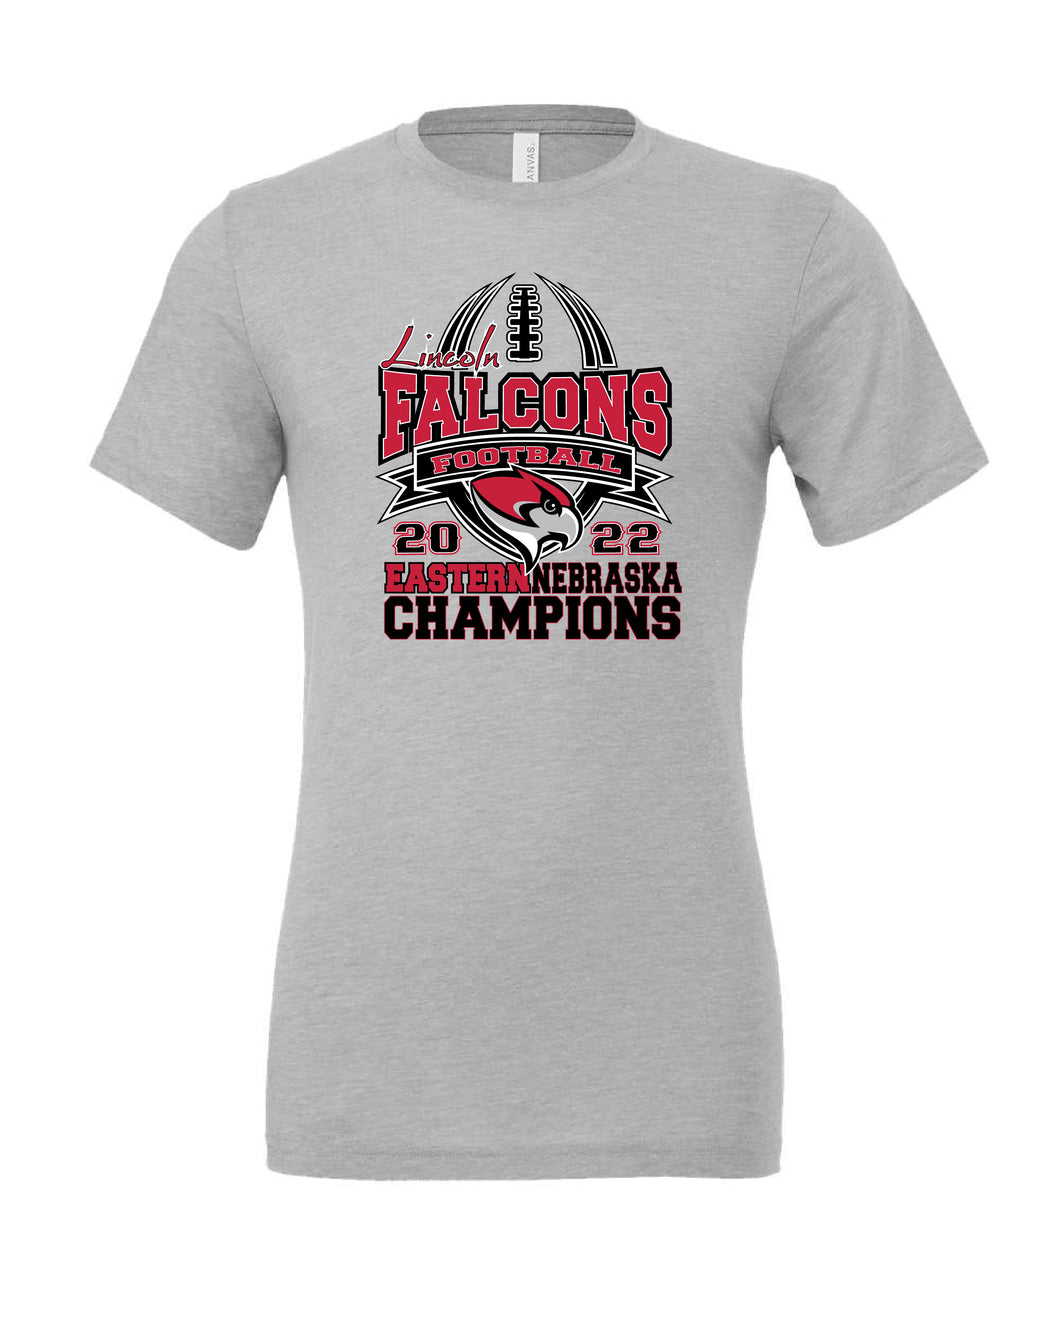 Lincoln Falcons Champion Tshirt BC